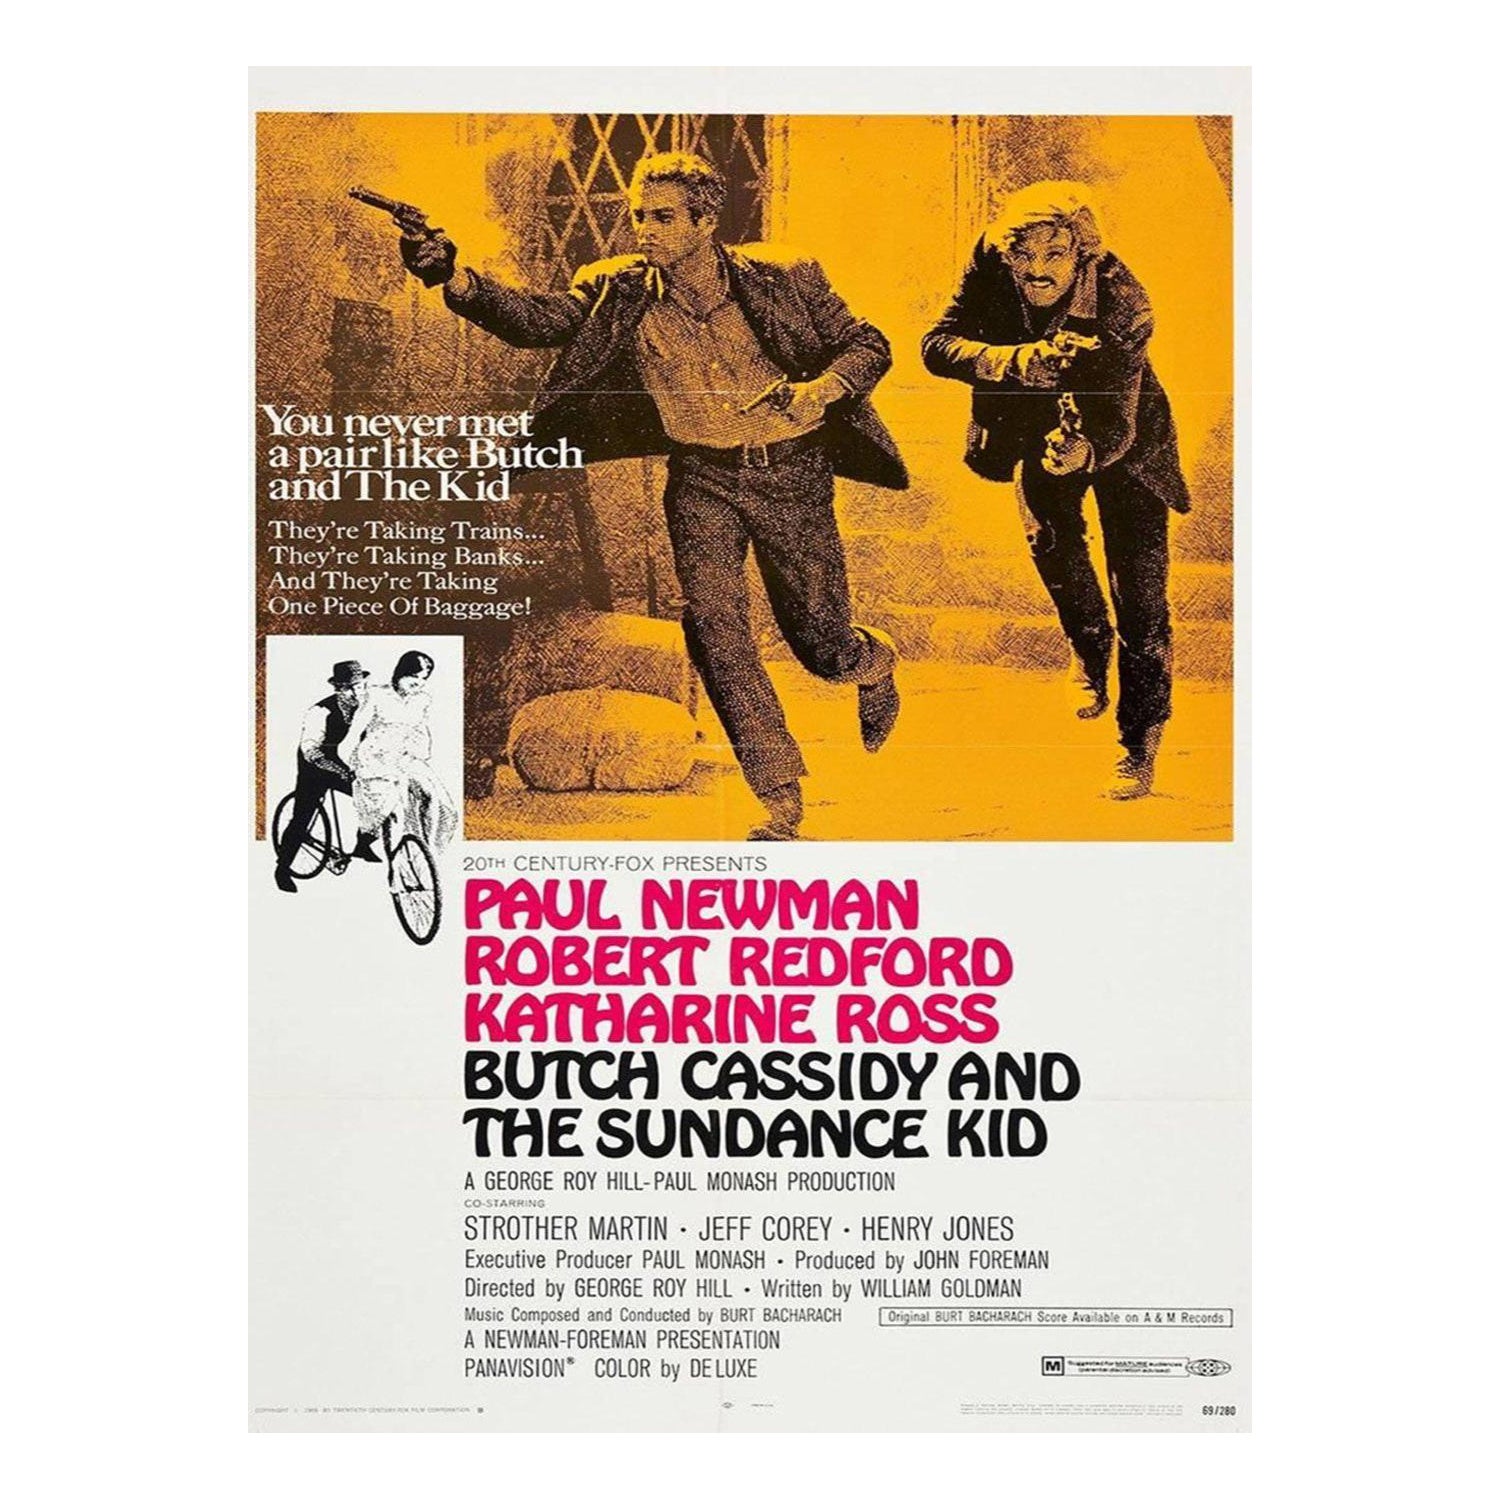 Butch Cassidy et le Sundance Kid - Affiche vintage d'origine de 1969